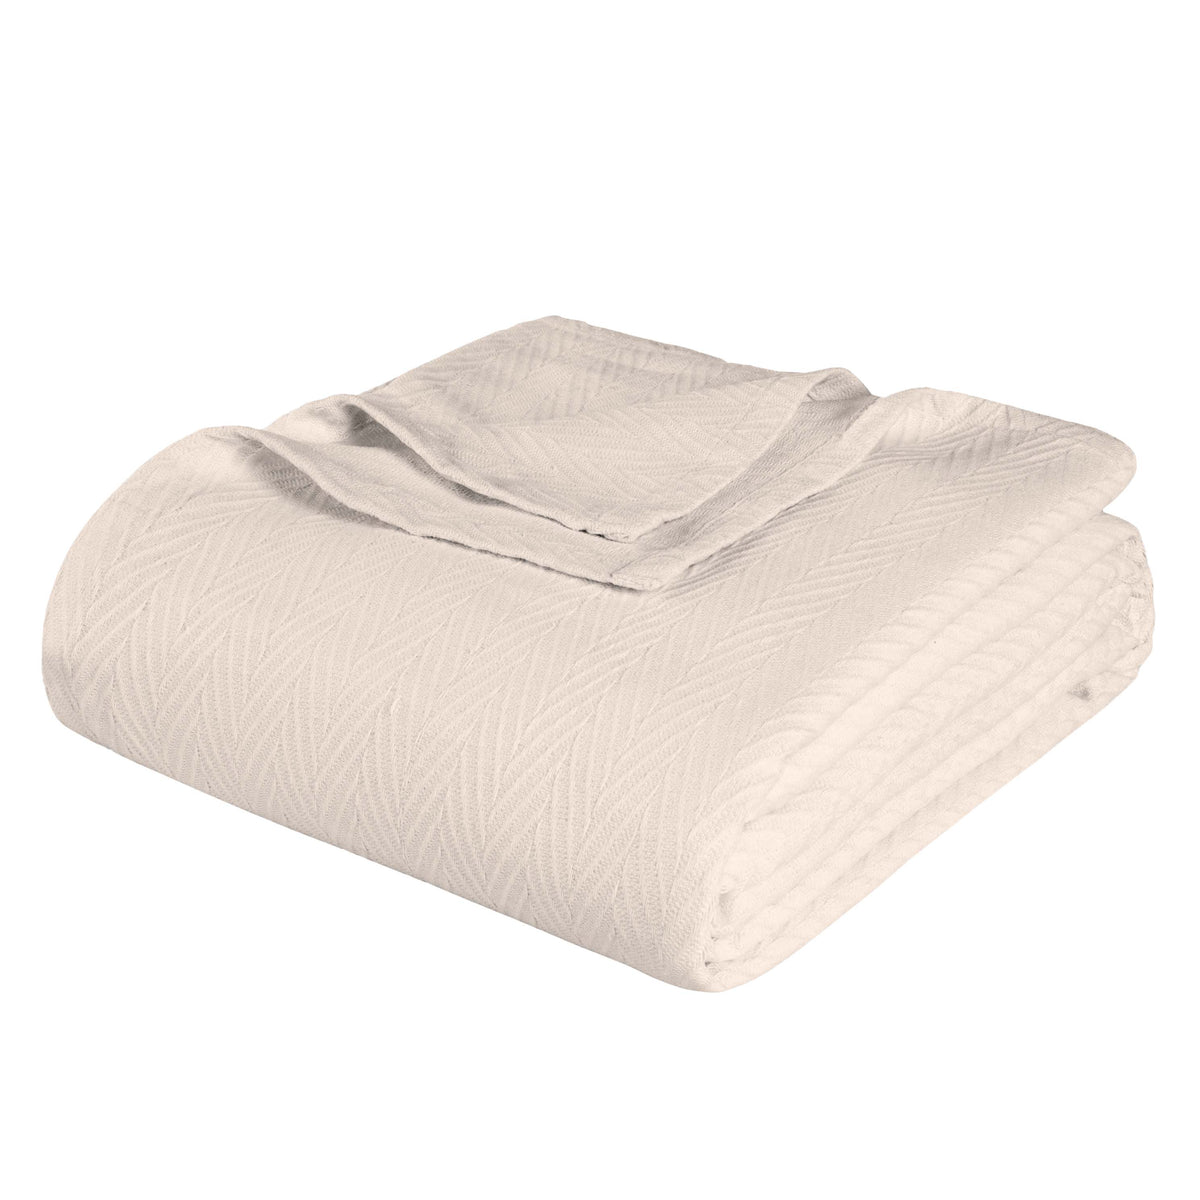 Chevron All-Season Cotton Blanket - Ivory